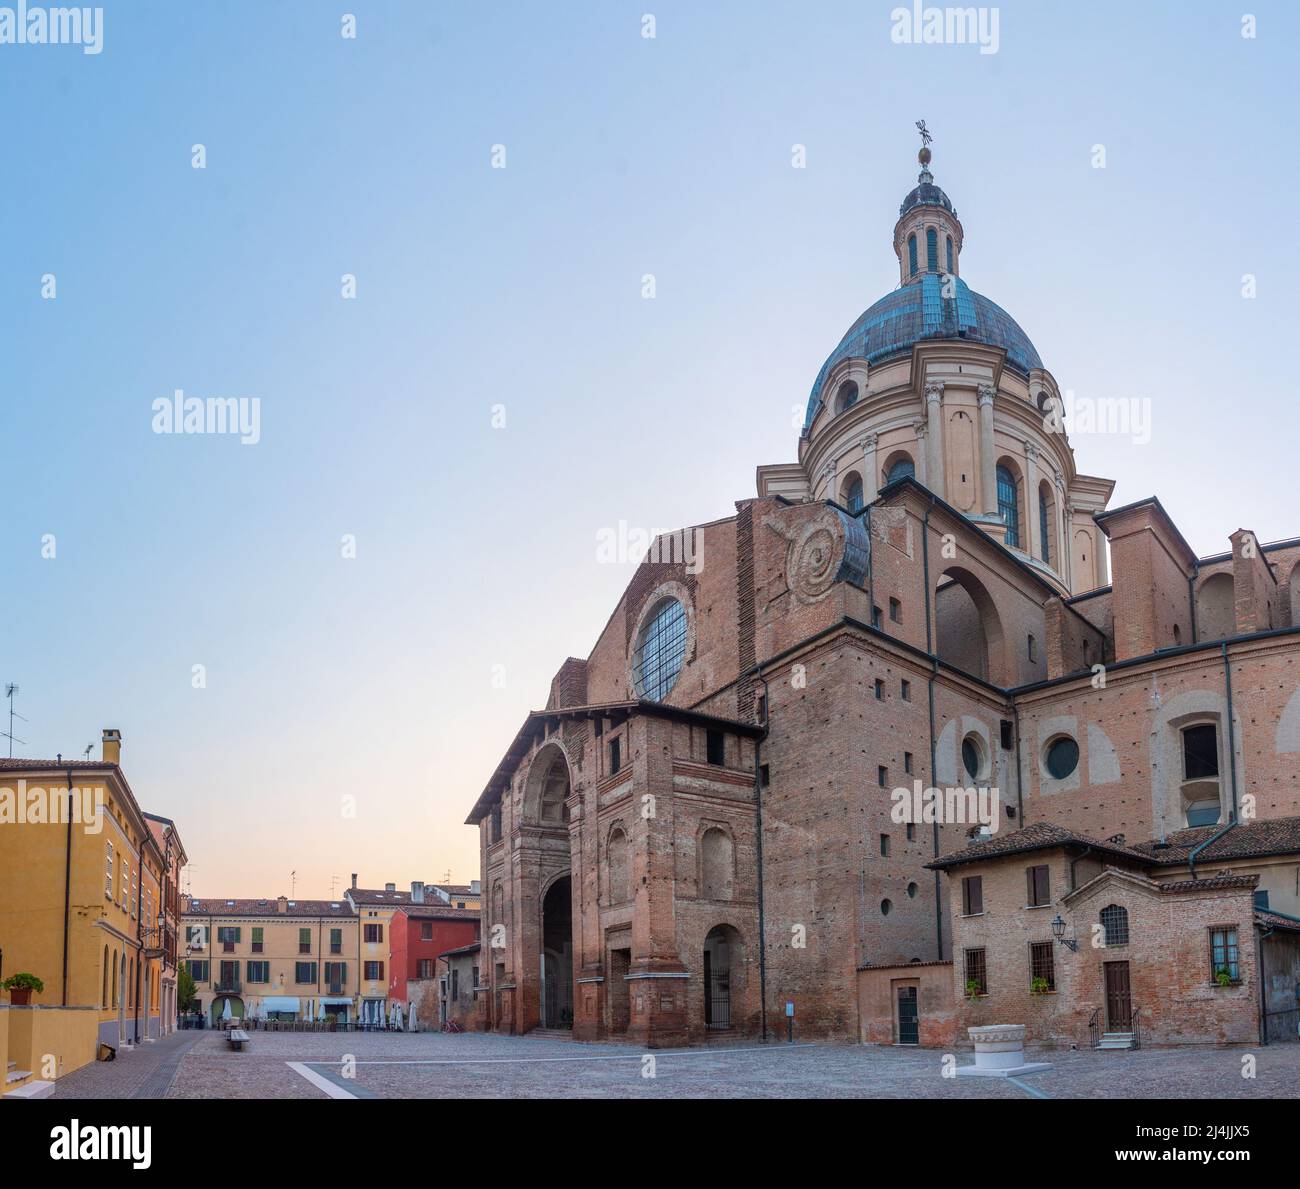 Basilica di Sant'Andrea in Mantua, Italy Stock Photo